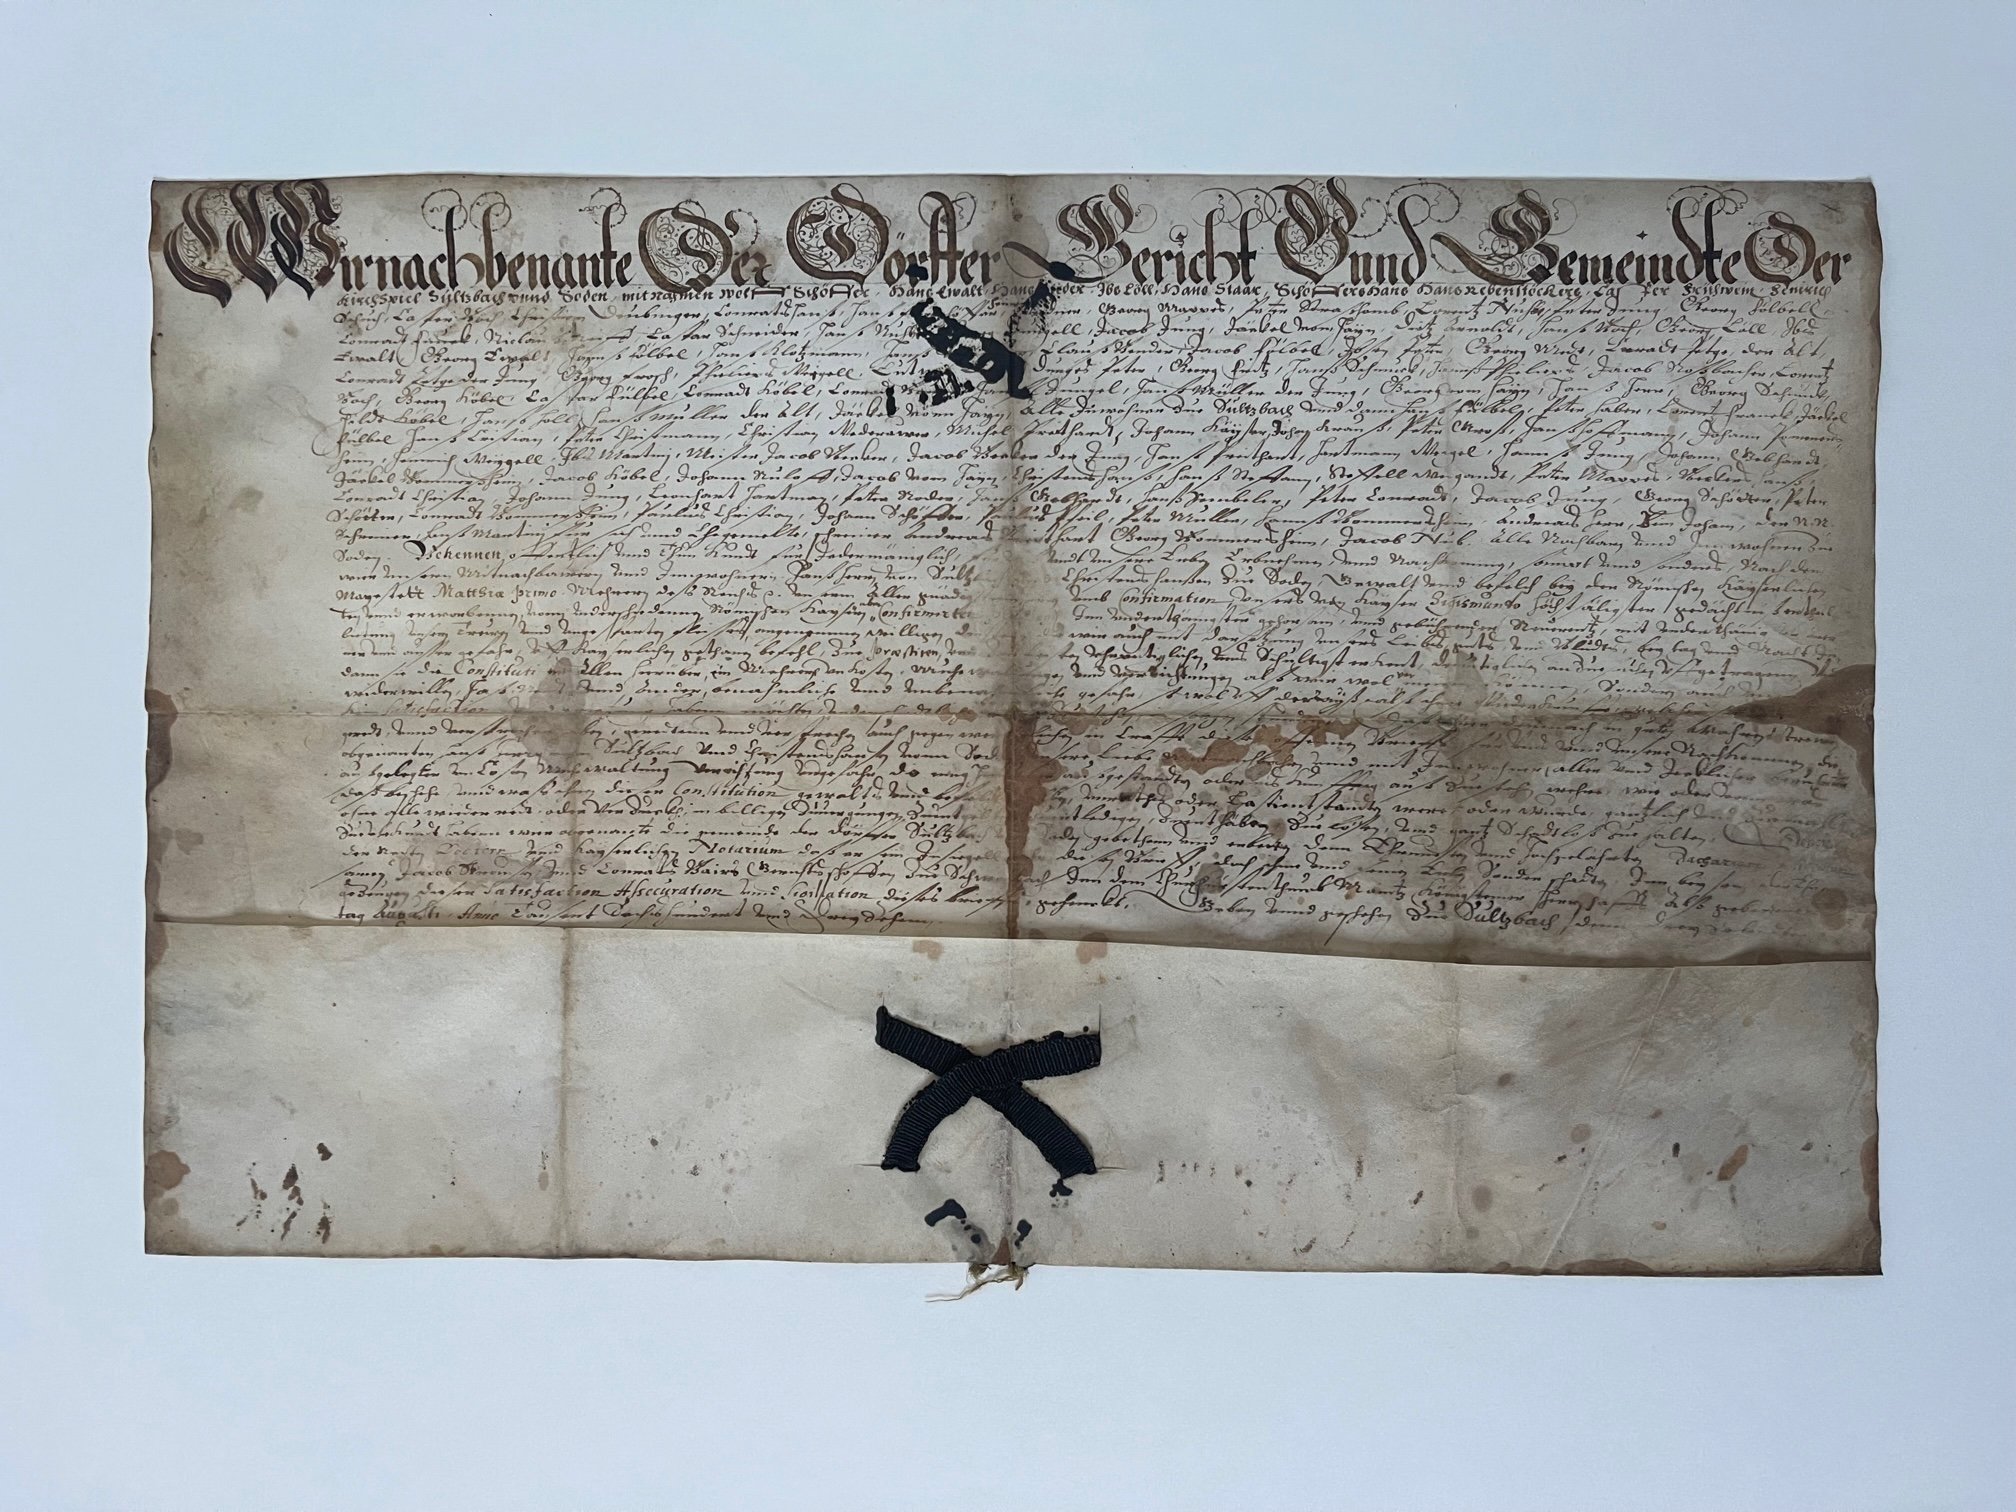 Urkunde der Gemeinden Sulzbach und Soden vom 13. August 1613 (Taunus-Rhein-Main - Regionalgeschichtliche Sammlung Dr. Stefan Naas CC BY-NC-SA)